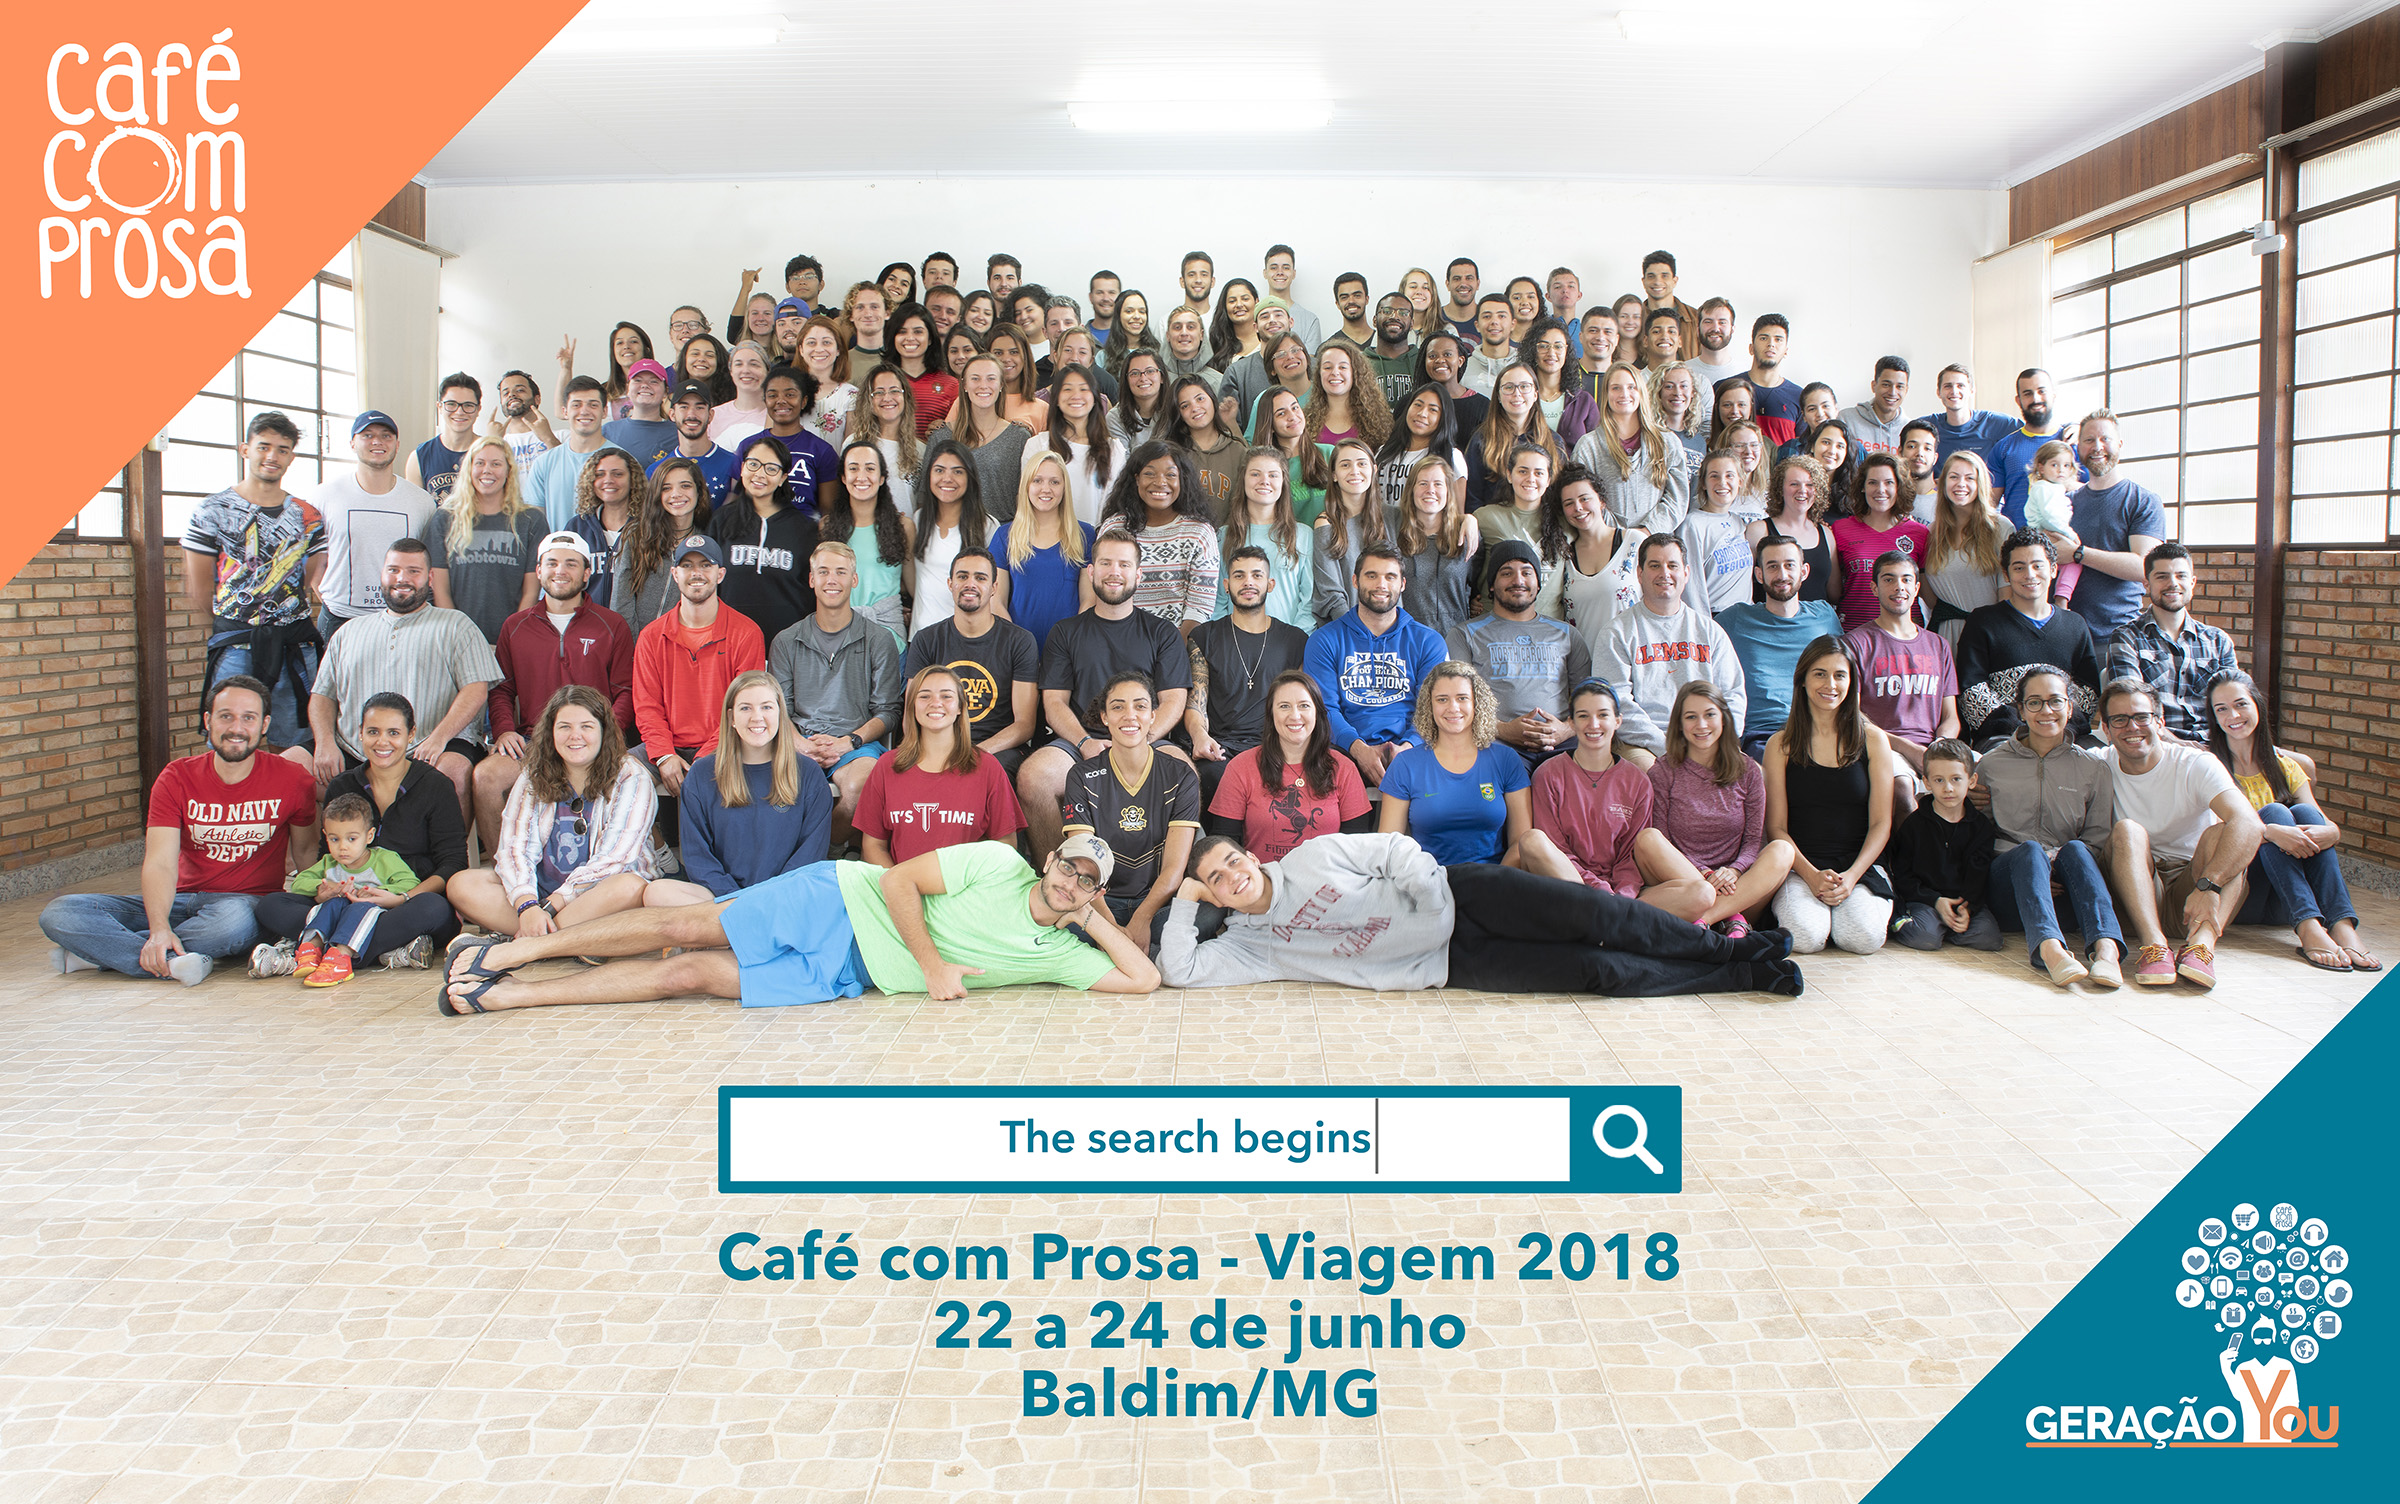 FOTO OFICIAL Café com Prosa - Viagem 2018 (low res).jpg